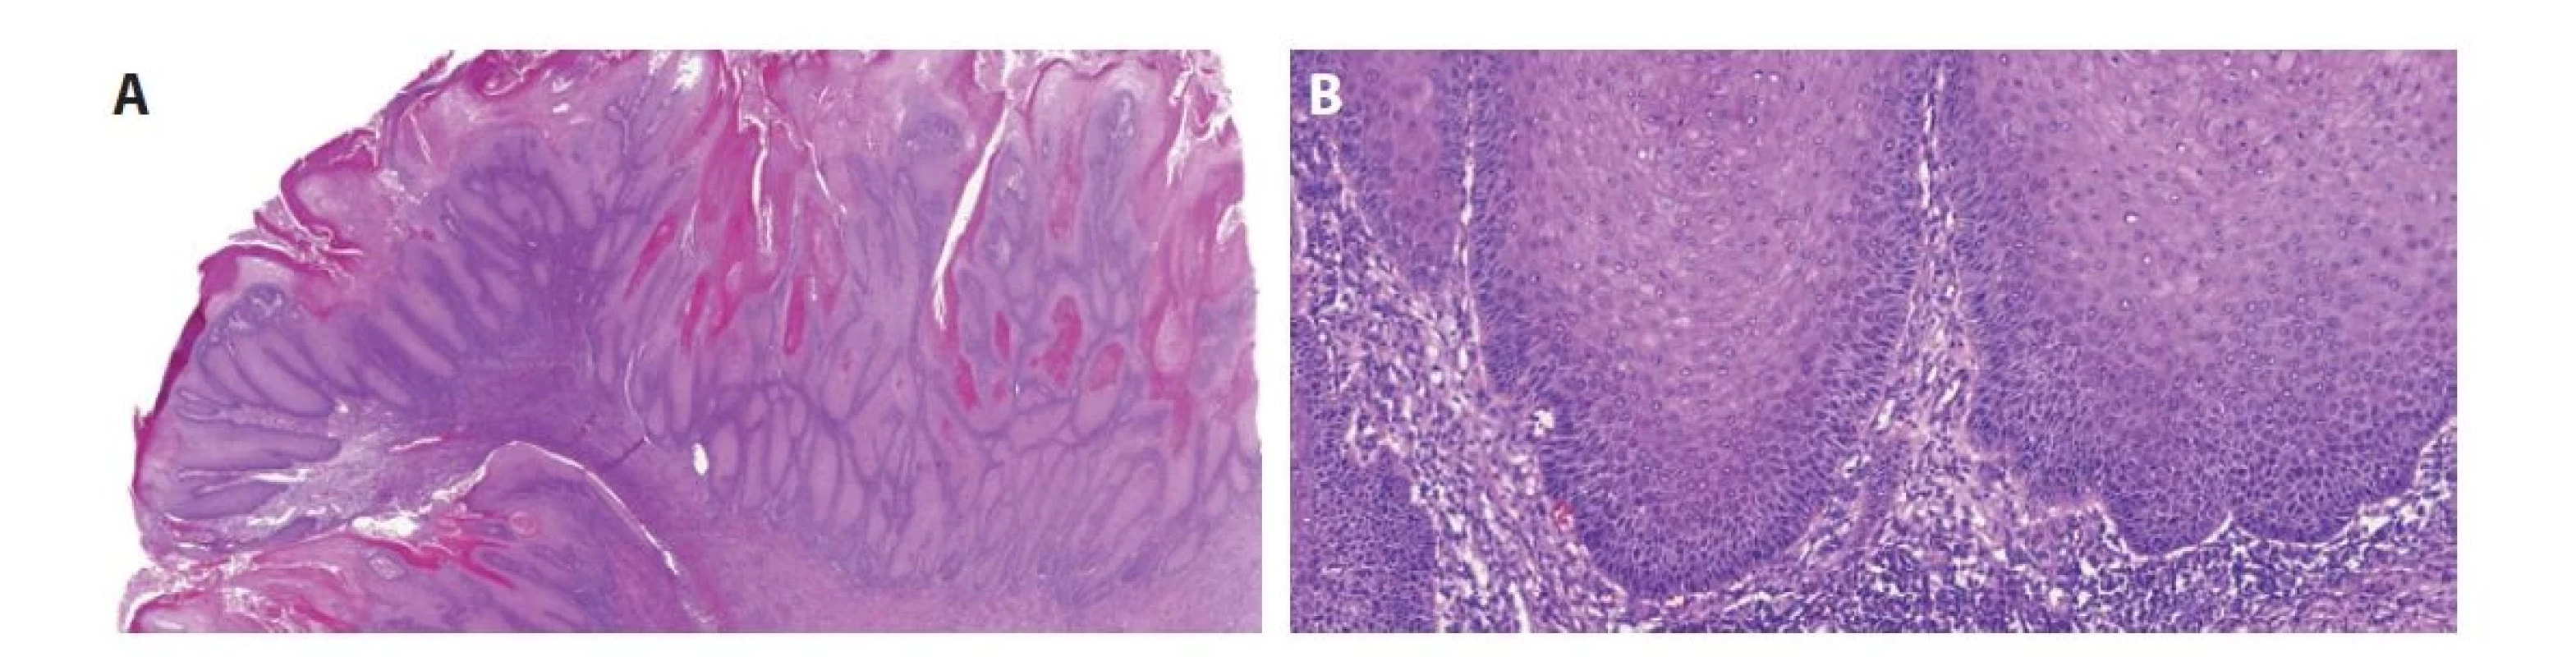 Verukózní karcinom je papilárně rostoucí dobře diferencovaný tumor neinfiltrující do stromatu (vyznačuje se tzv. „pushing pattern of infiltration“)
(A). Tumor nevykazuje výraznější cytologické atypie (B).